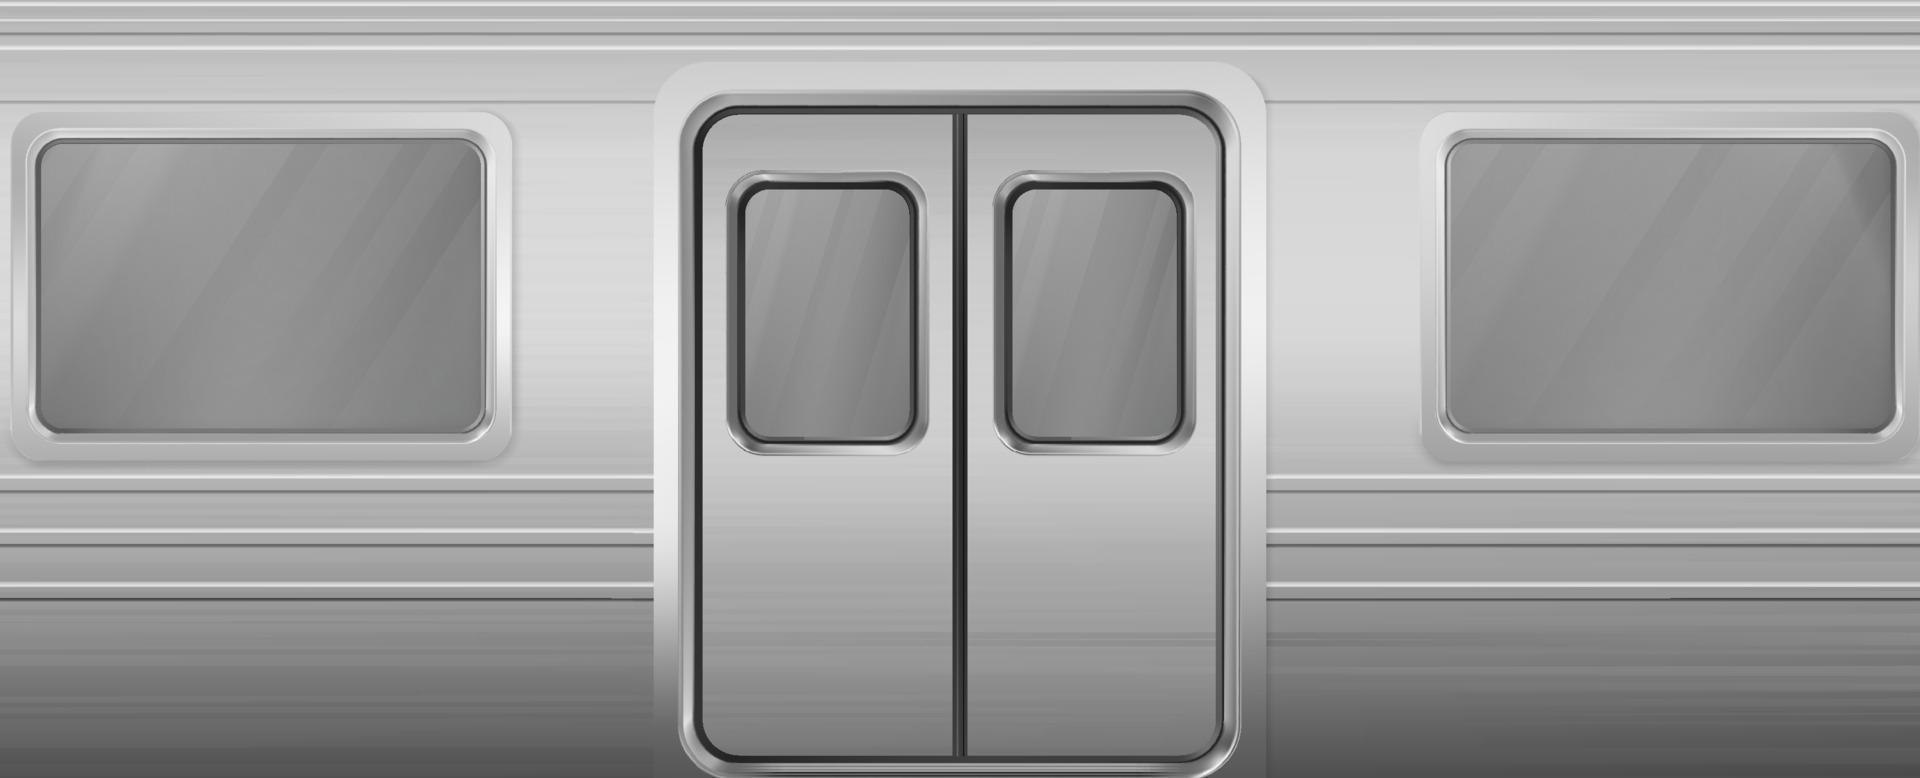 vagón de tren con ventanas y puertas cerradas vector